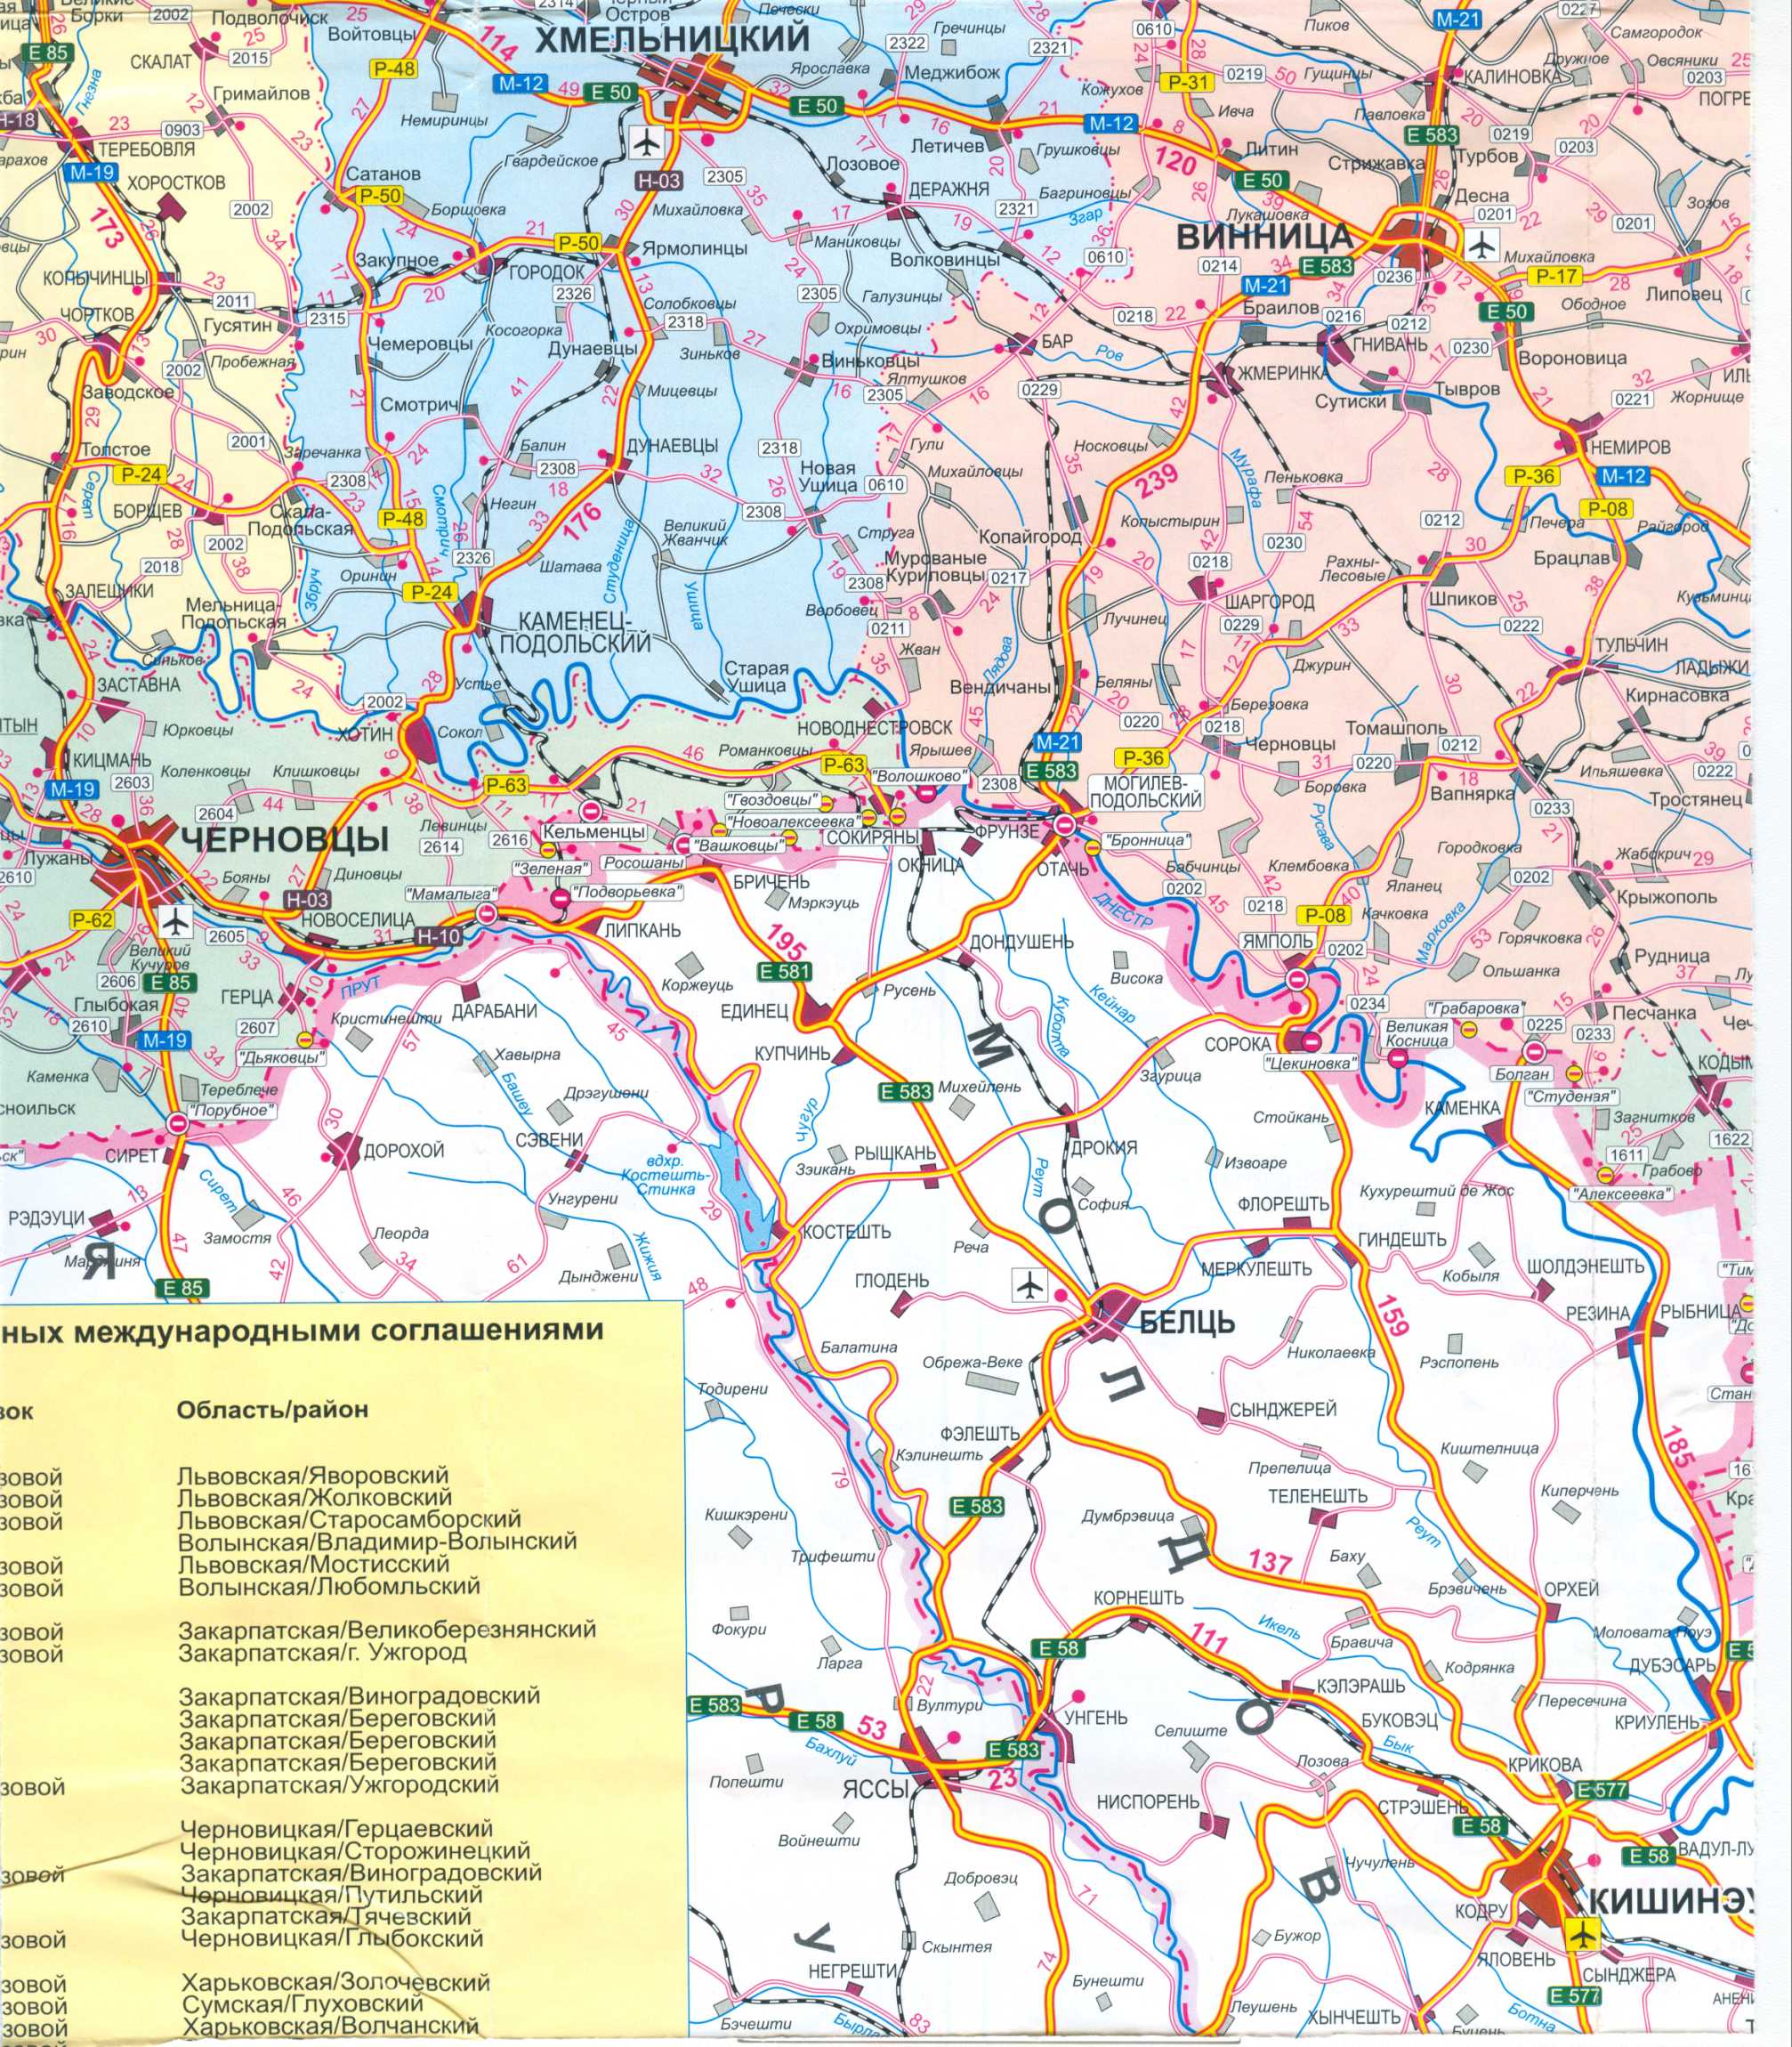 Karte der Ukraine frei. Road Map der Ukraine kostenlos herunterladen. Große Karte von Ukraine Straßen frei, B1